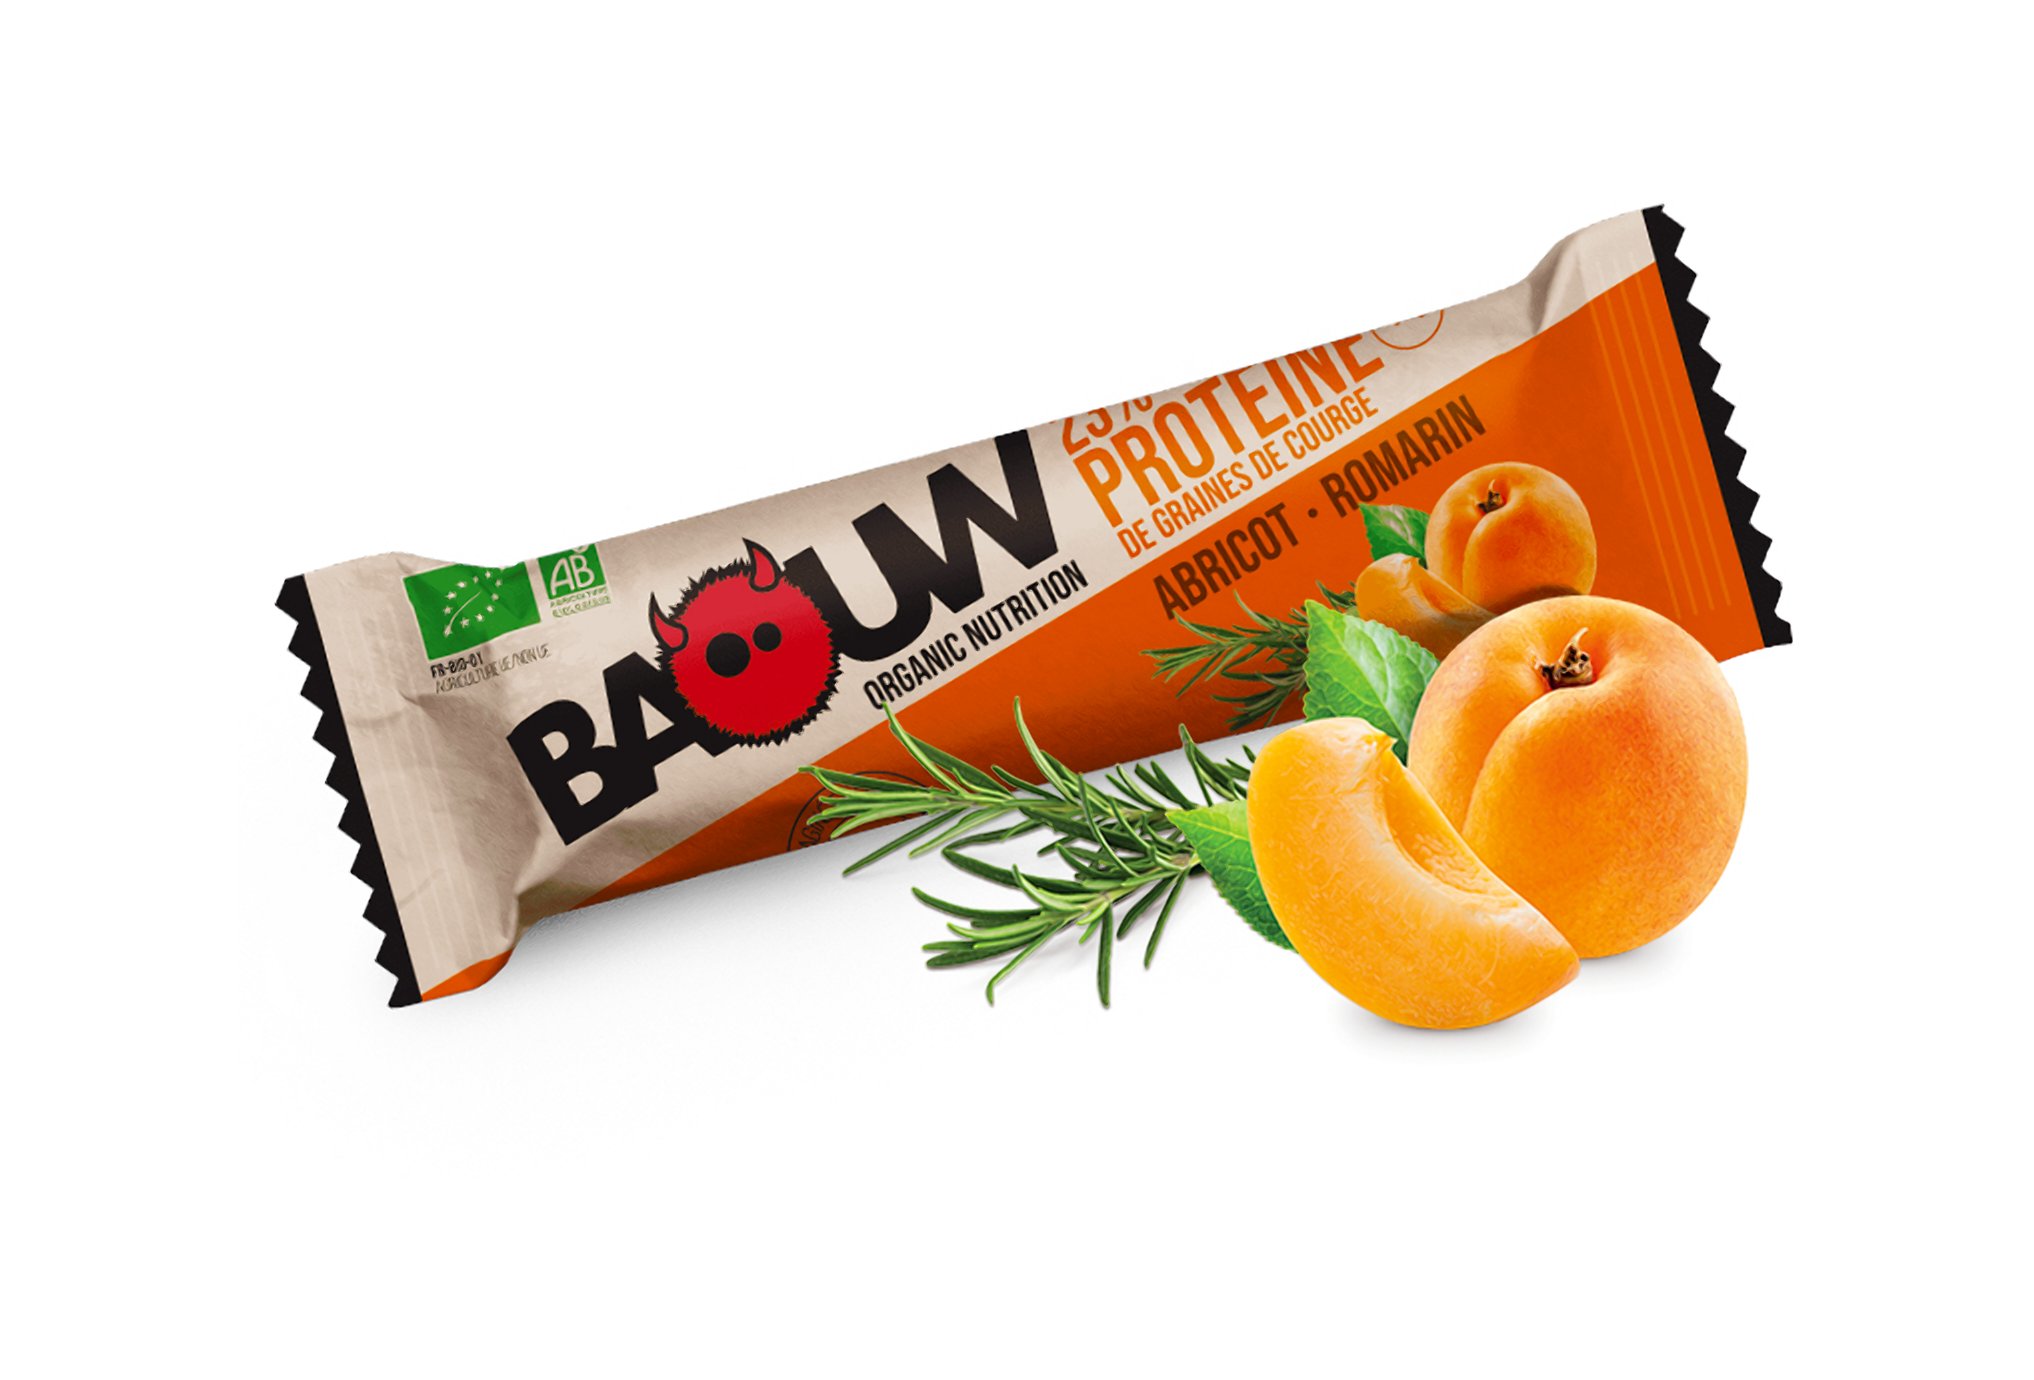 Baouw Barre protéinée bio - Protéine de graines de courge - Abricot - Romarin Diététique $scat.CAT_N